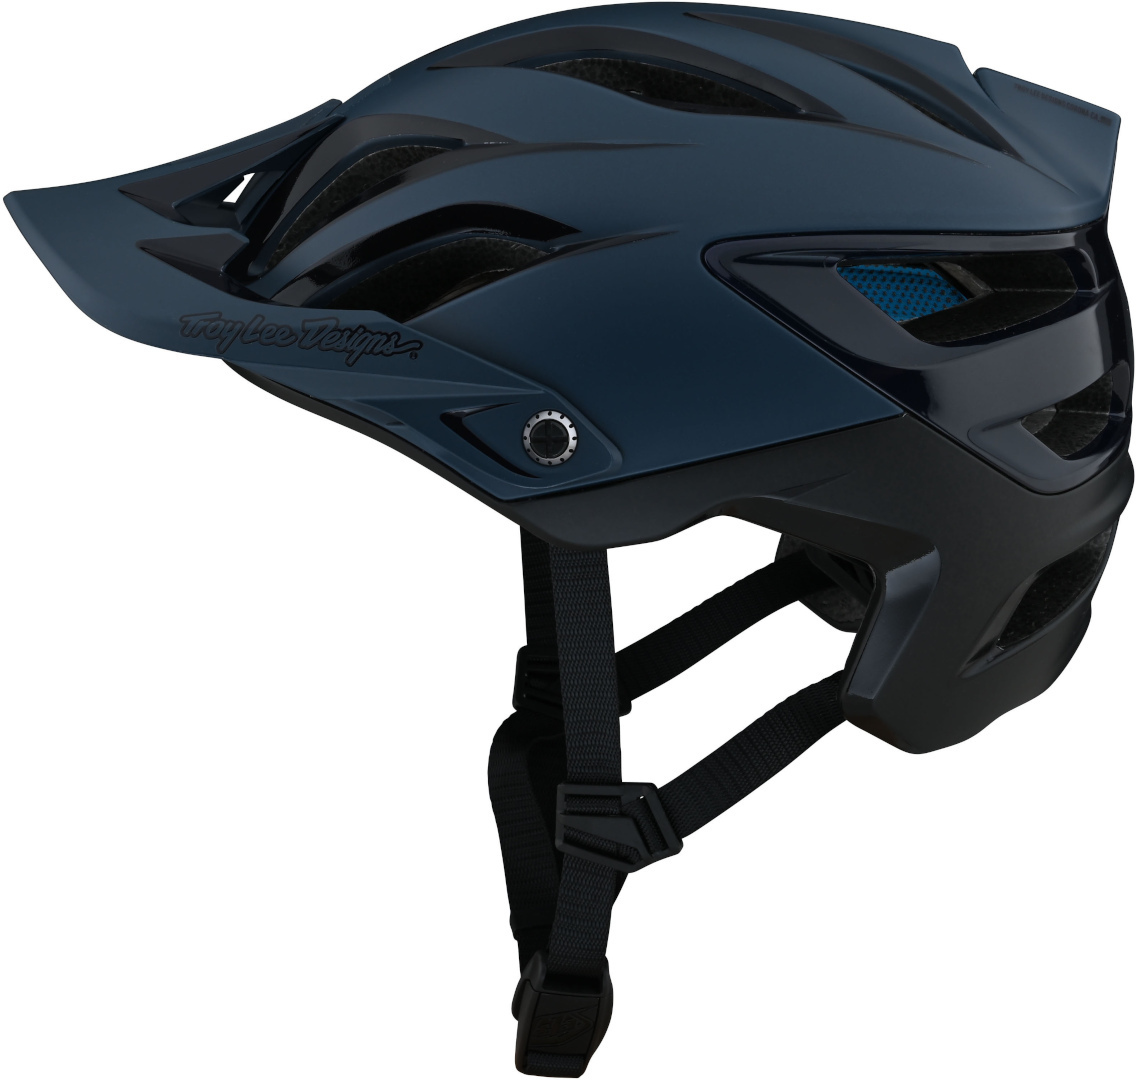 шлем troy lee designs a3 uno mips велосипедный синий черный Шлем Troy Lee Designs A3 Uno MIPS велосипедный, синий/черный